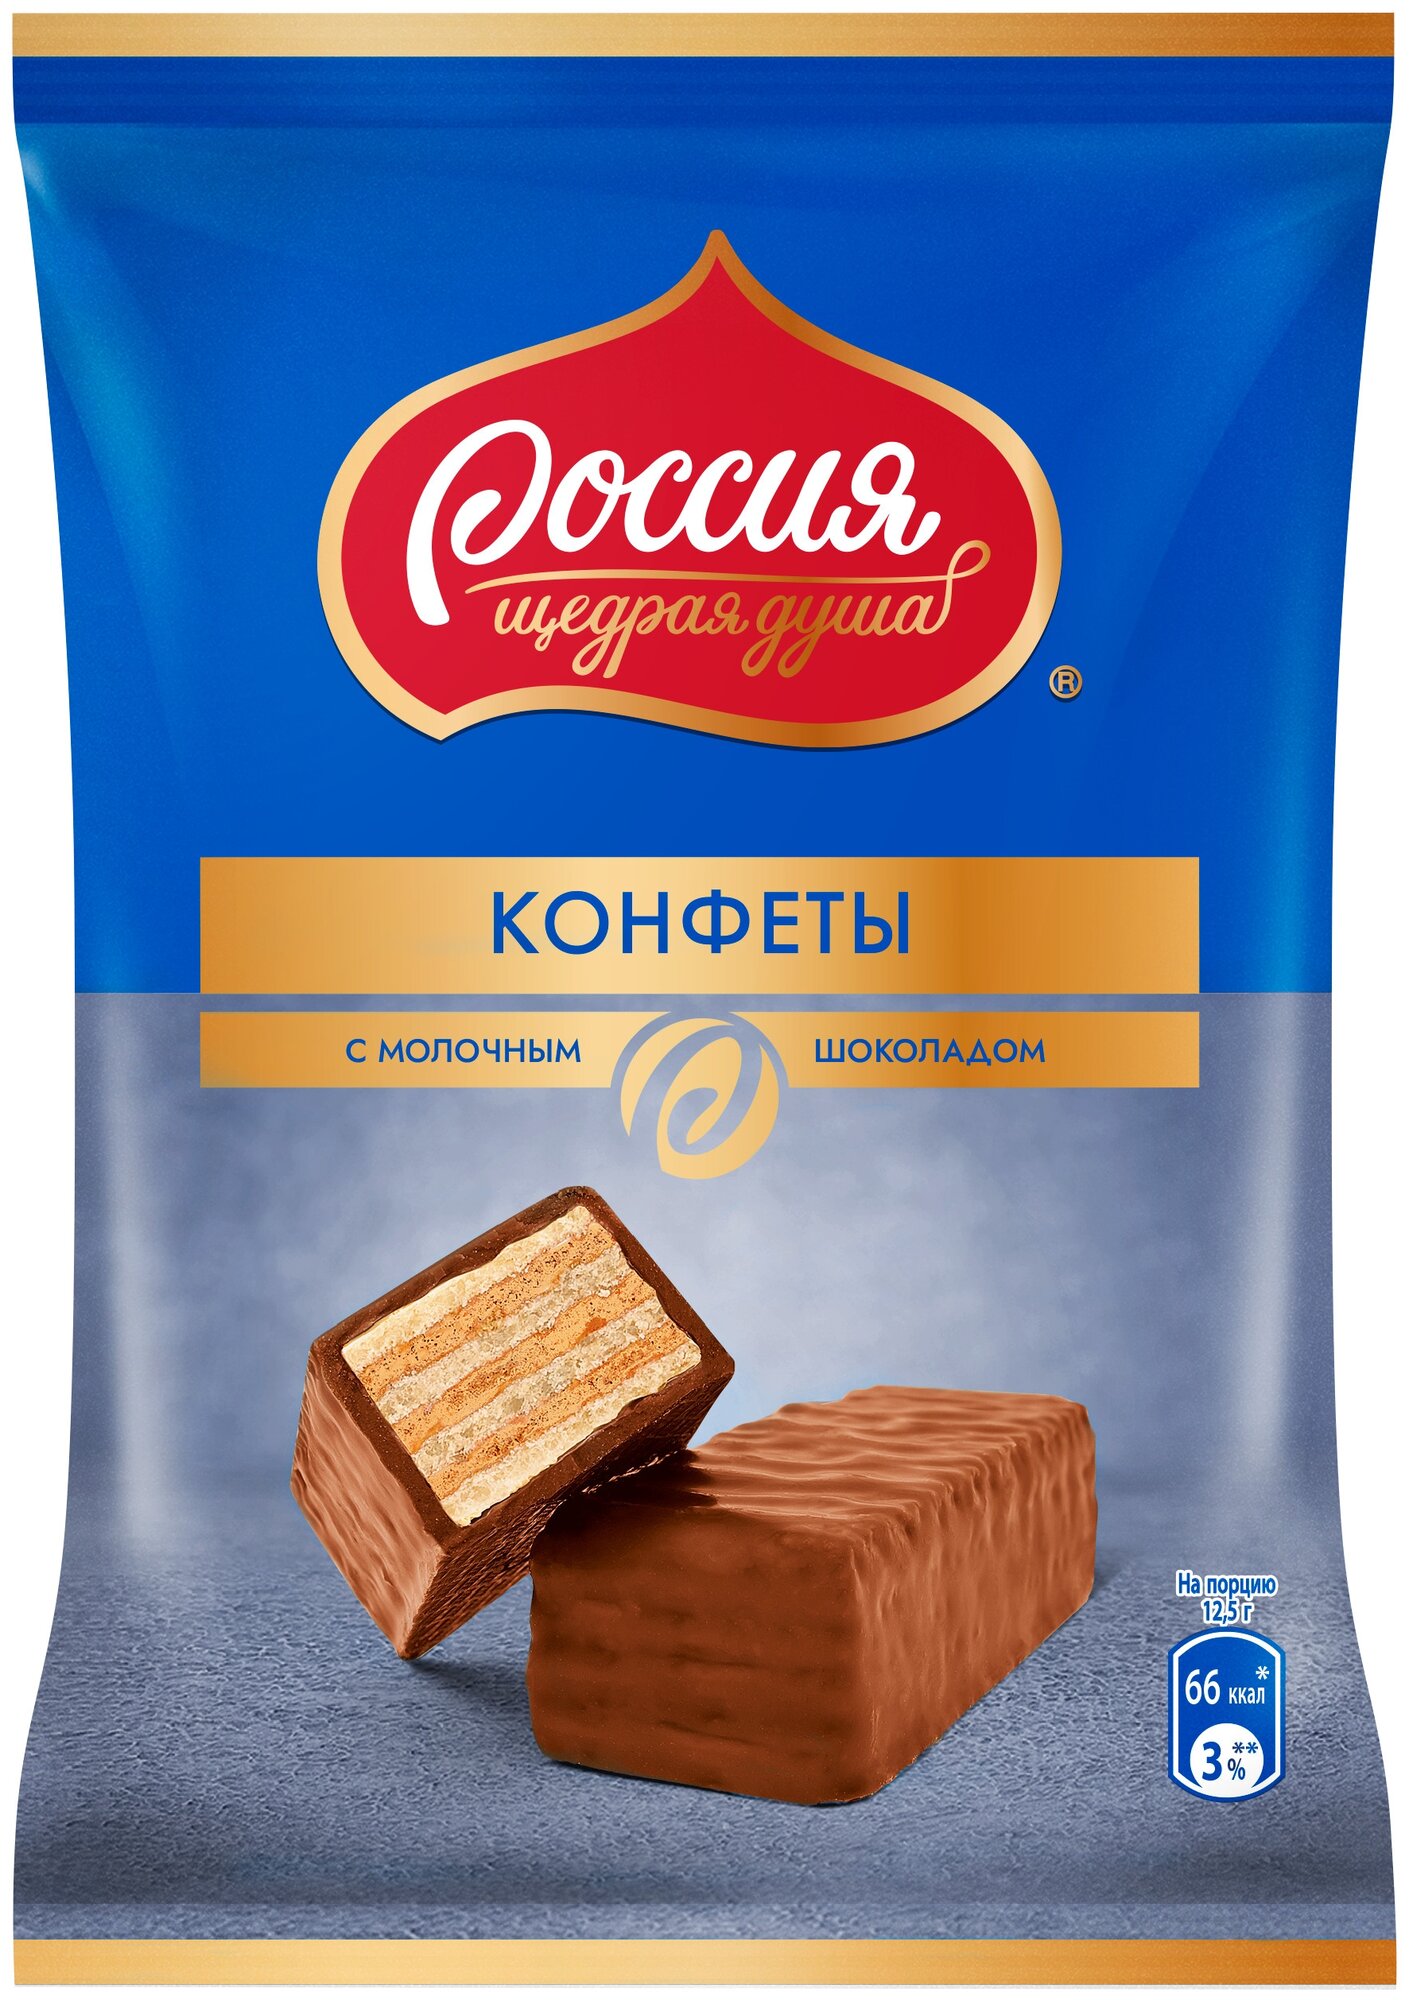 Конфеты Россия - Щедрая душа! Россия - щедрая душас вафлей и молочным шоколадом